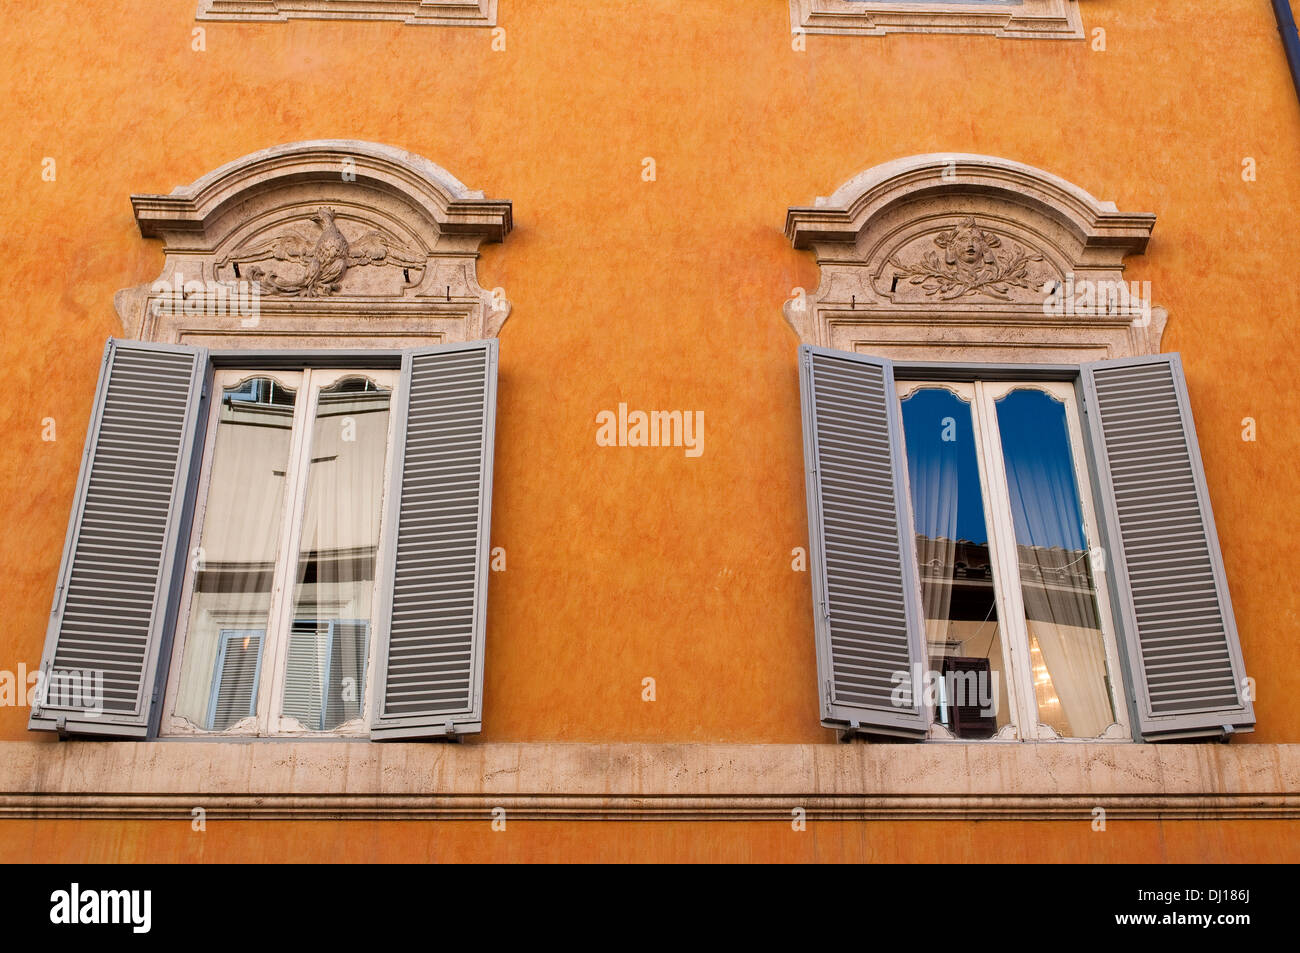 Windows élégant de Palazzo Piccolomini Testa, palais du 18ème siècle dans le quartier de Trevi, Rome, Italie Banque D'Images